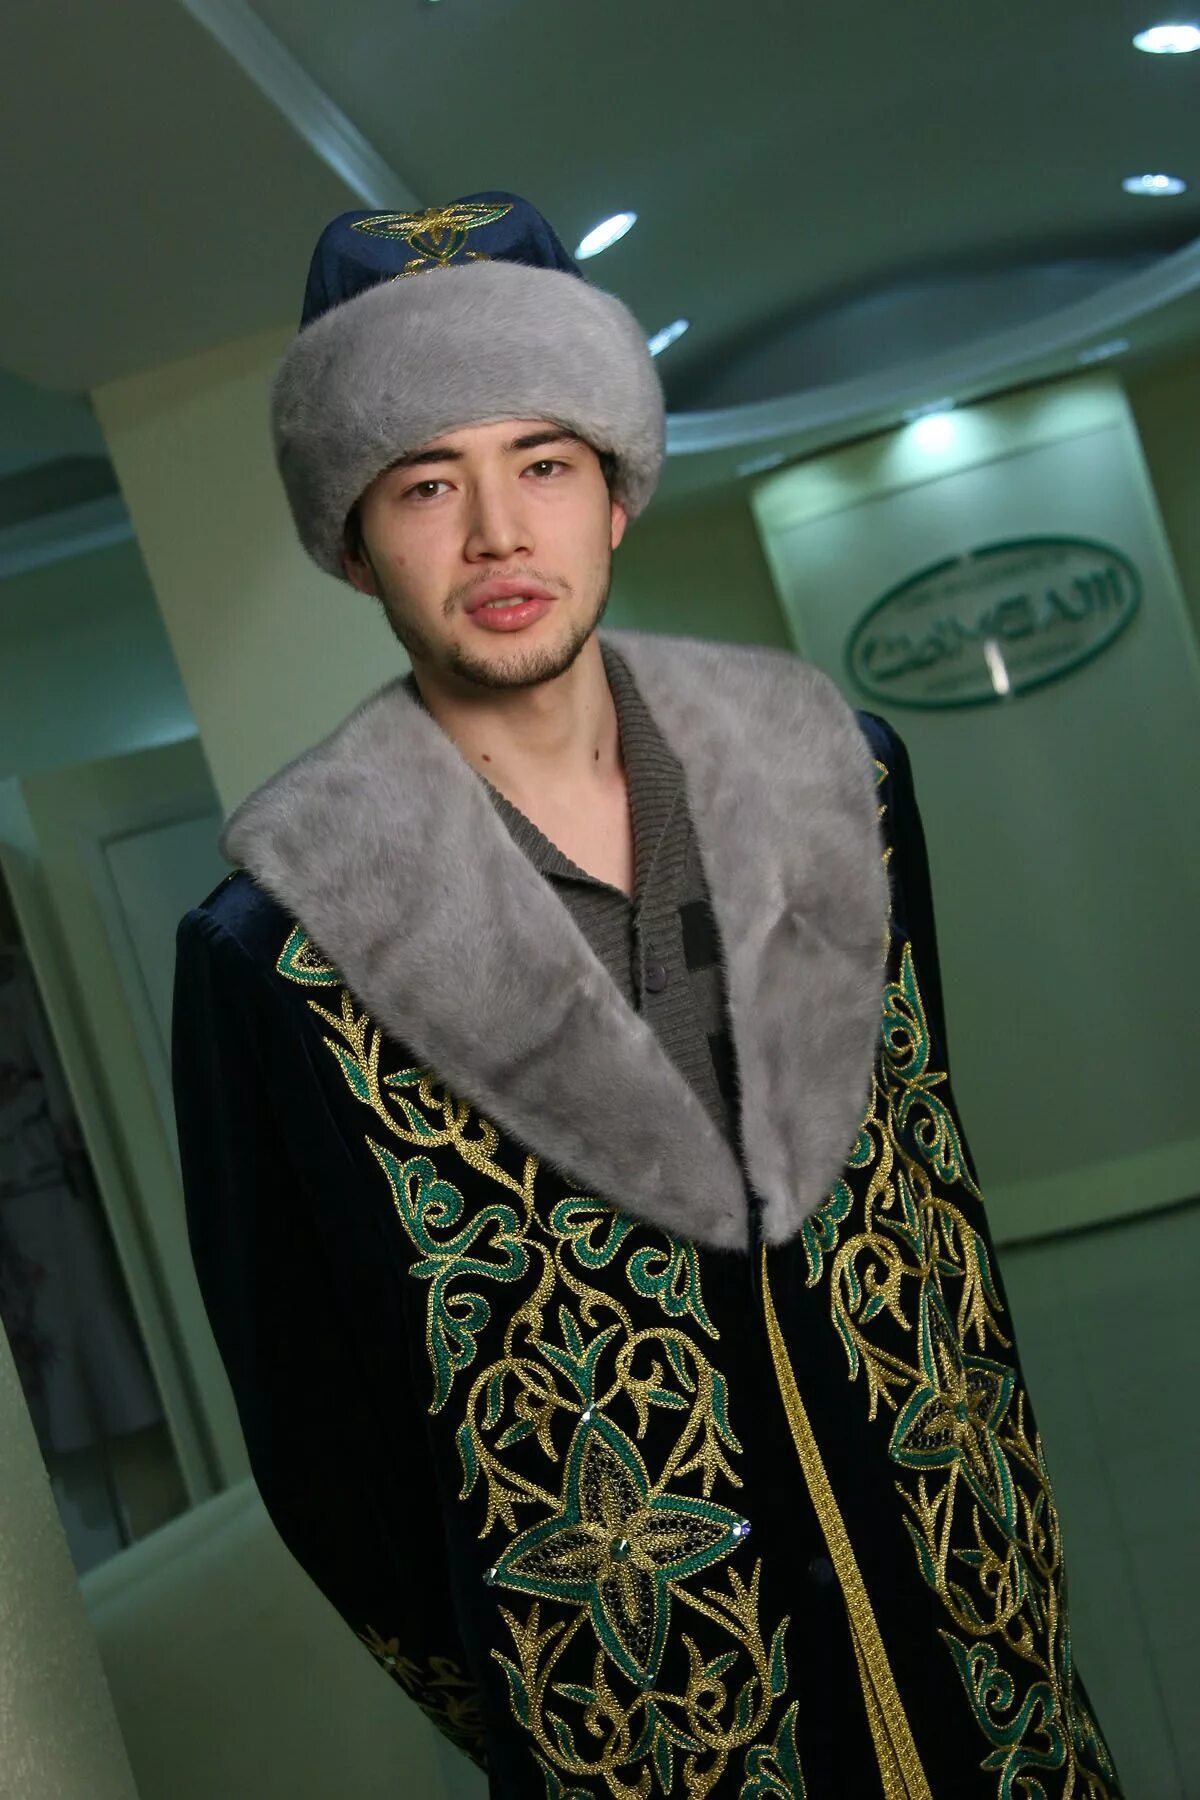 Казах man. Казахская одежда мужская. Казахская мода мужская. Казахи мужики. Kazakh me